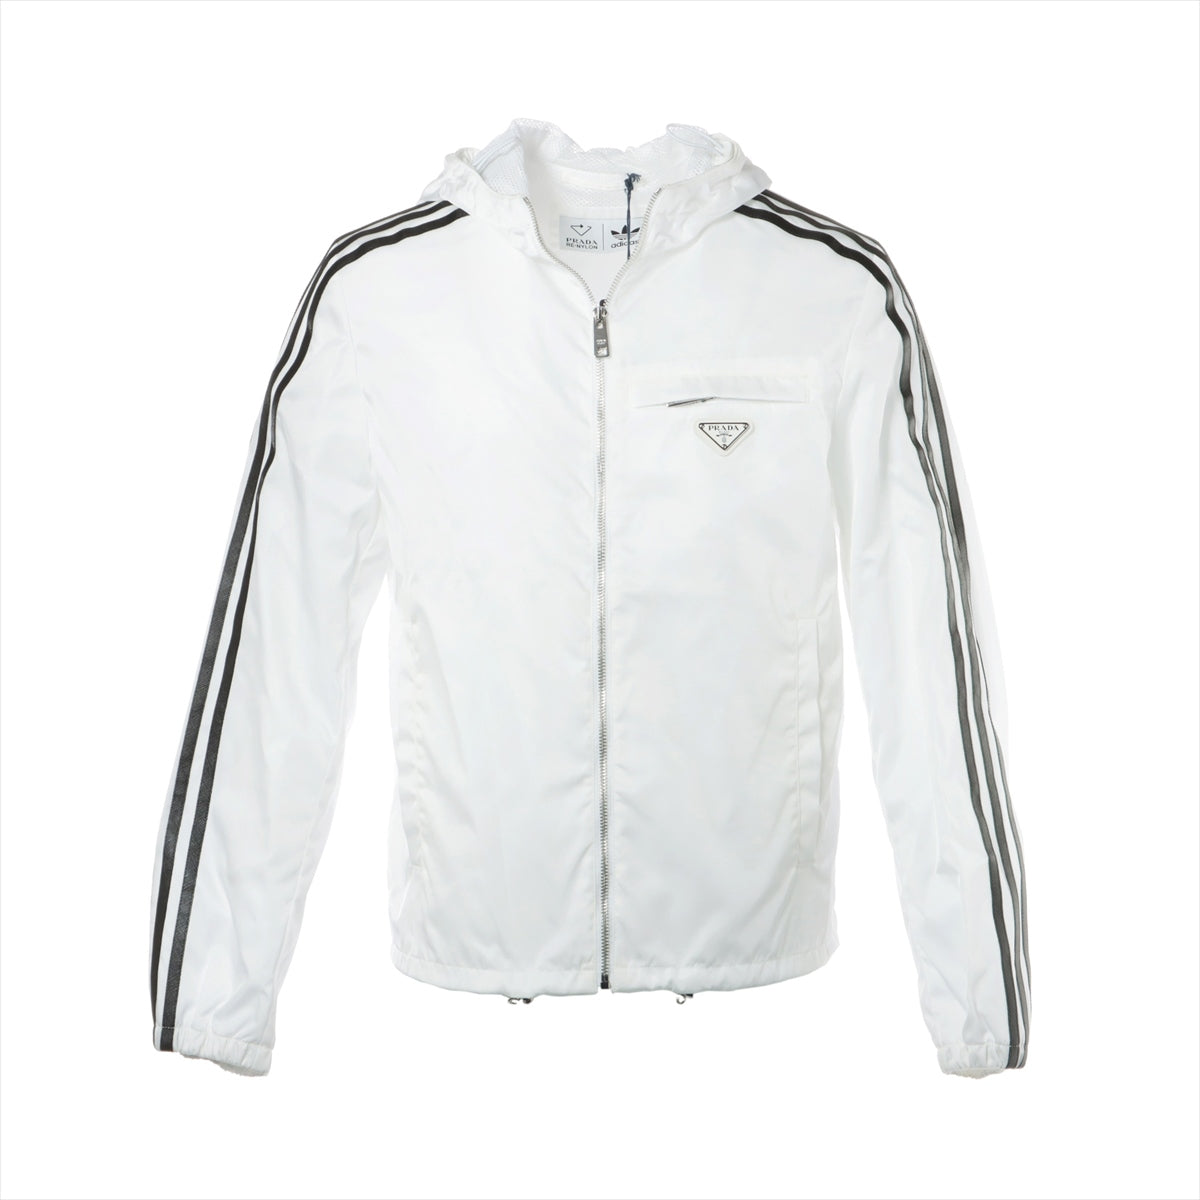 Prada x Adidas Triangle logo 21AW Nylon Jacket 44 Men's White RE 